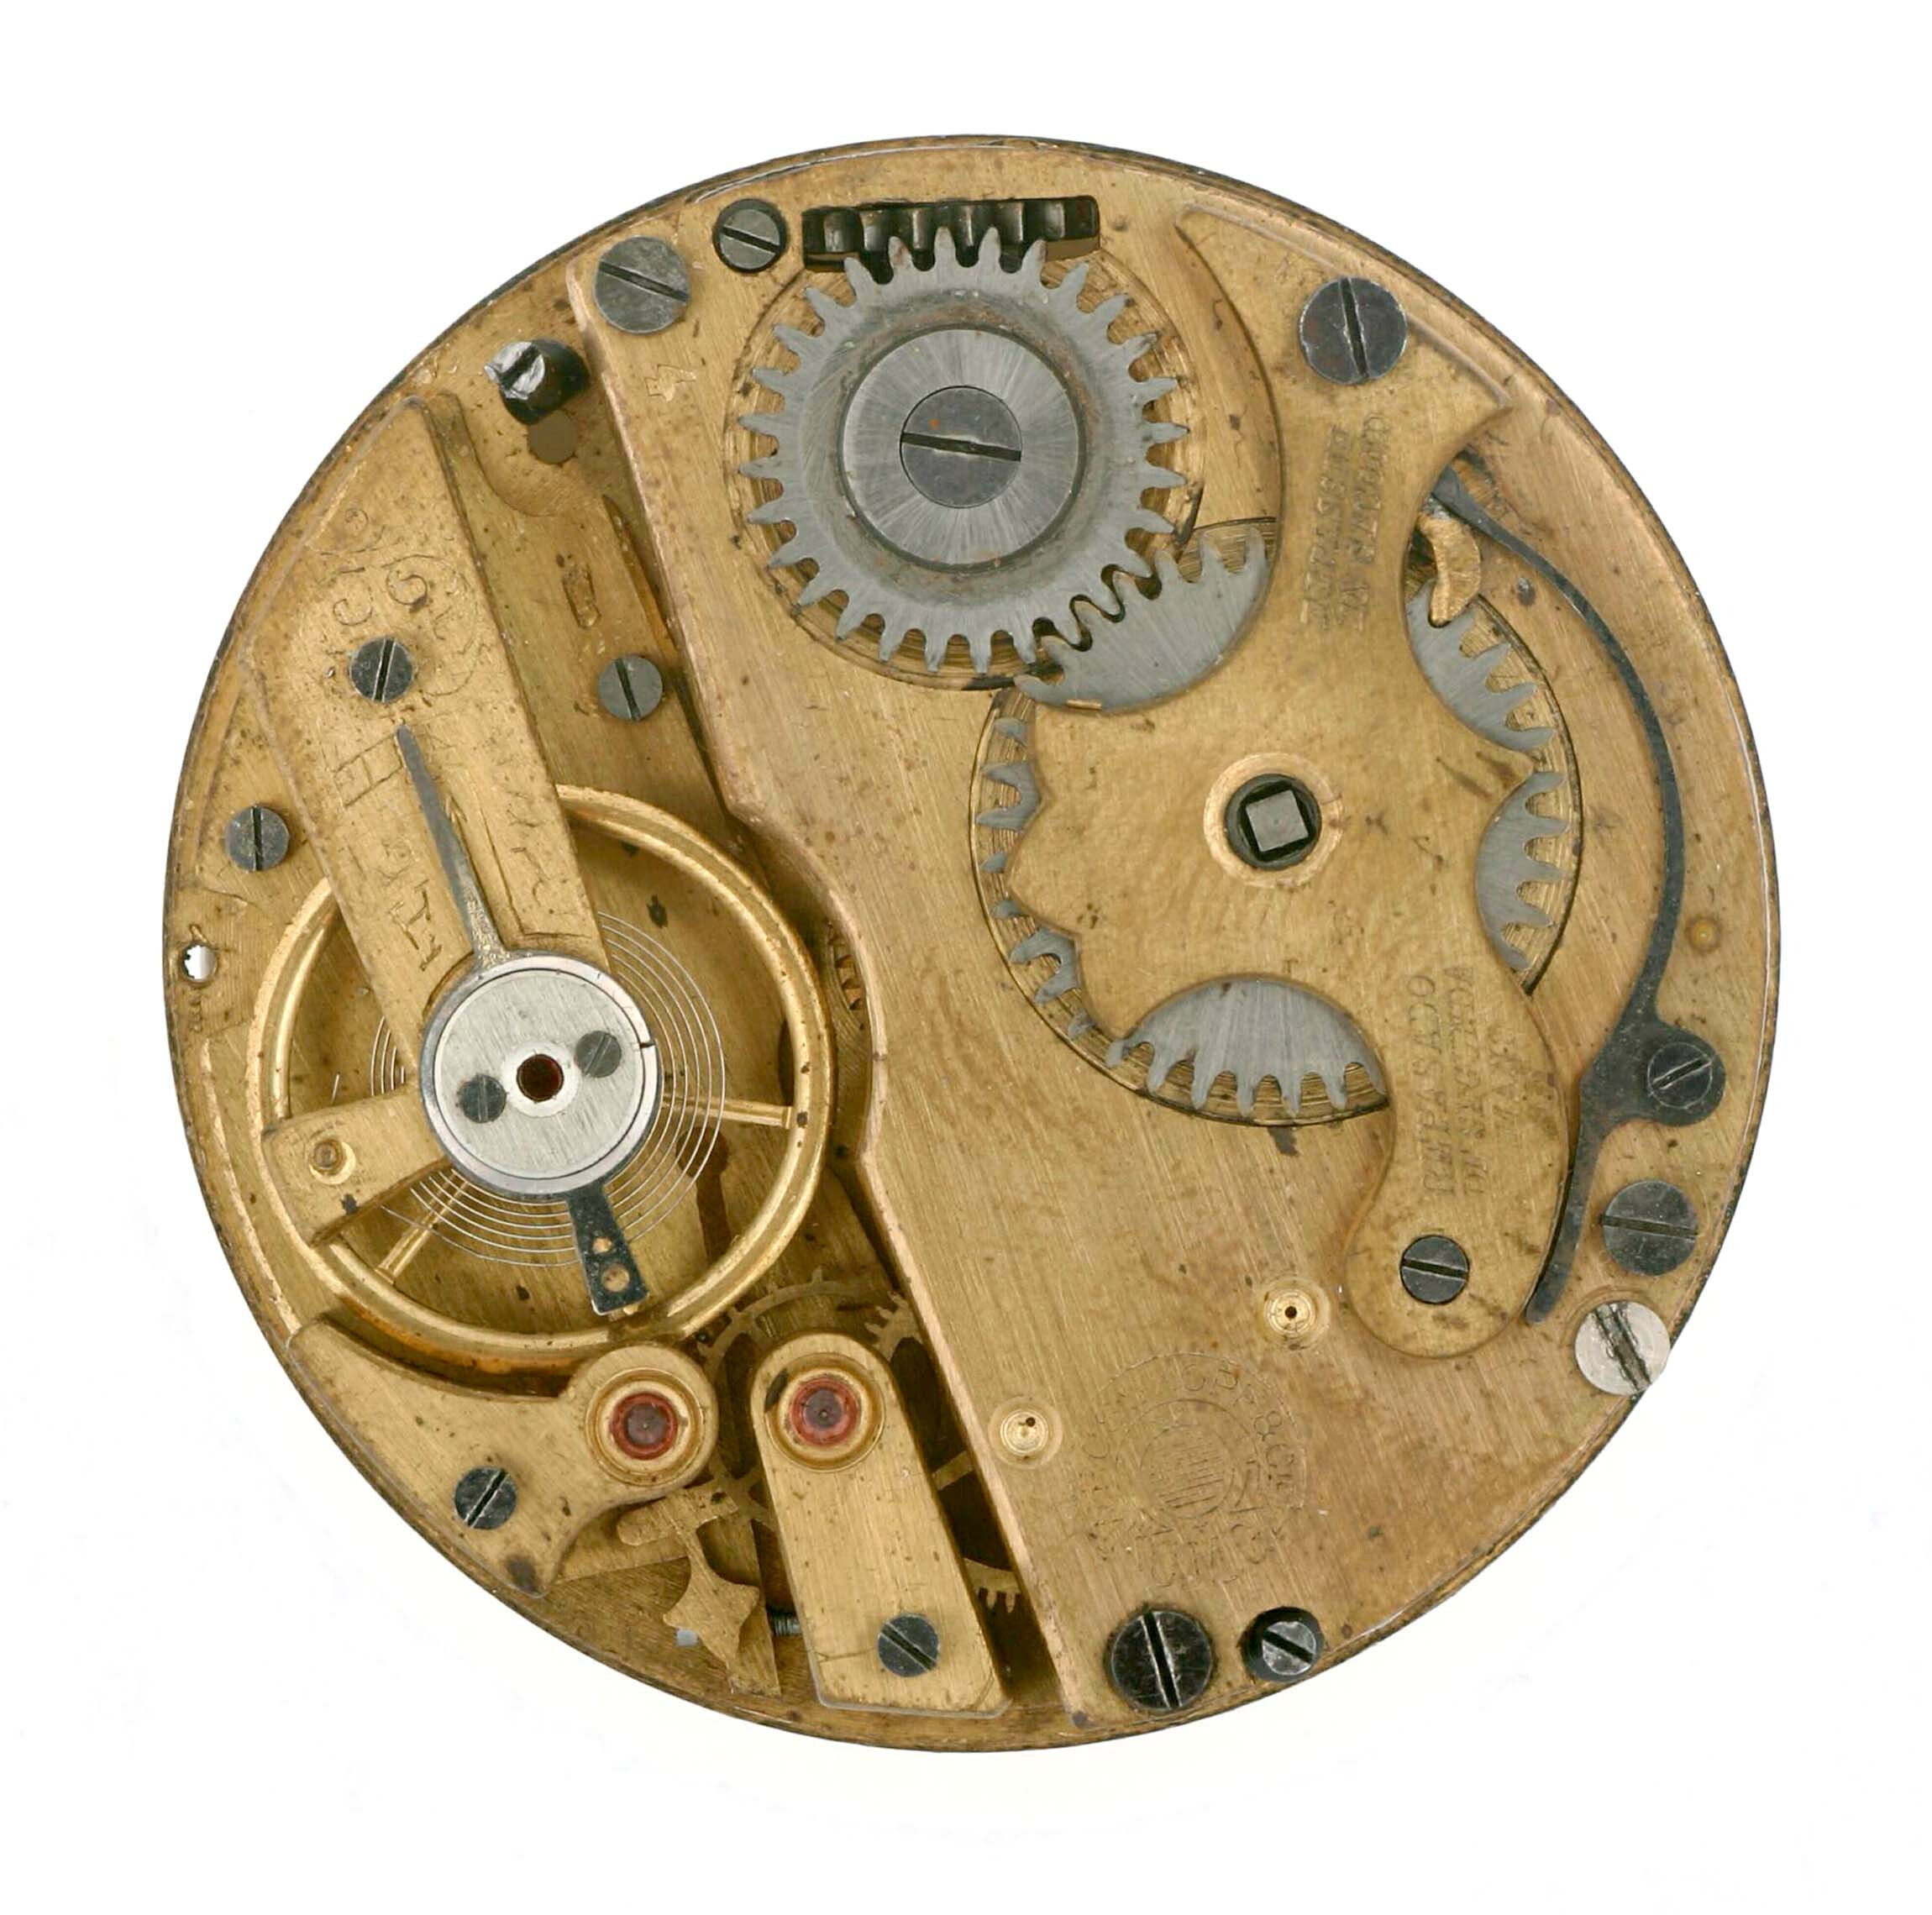 Taschenuhr W. Rosskopf und Co. Patent, Schweiz um 1900 (Deutsches Uhrenmuseum CC BY-SA)